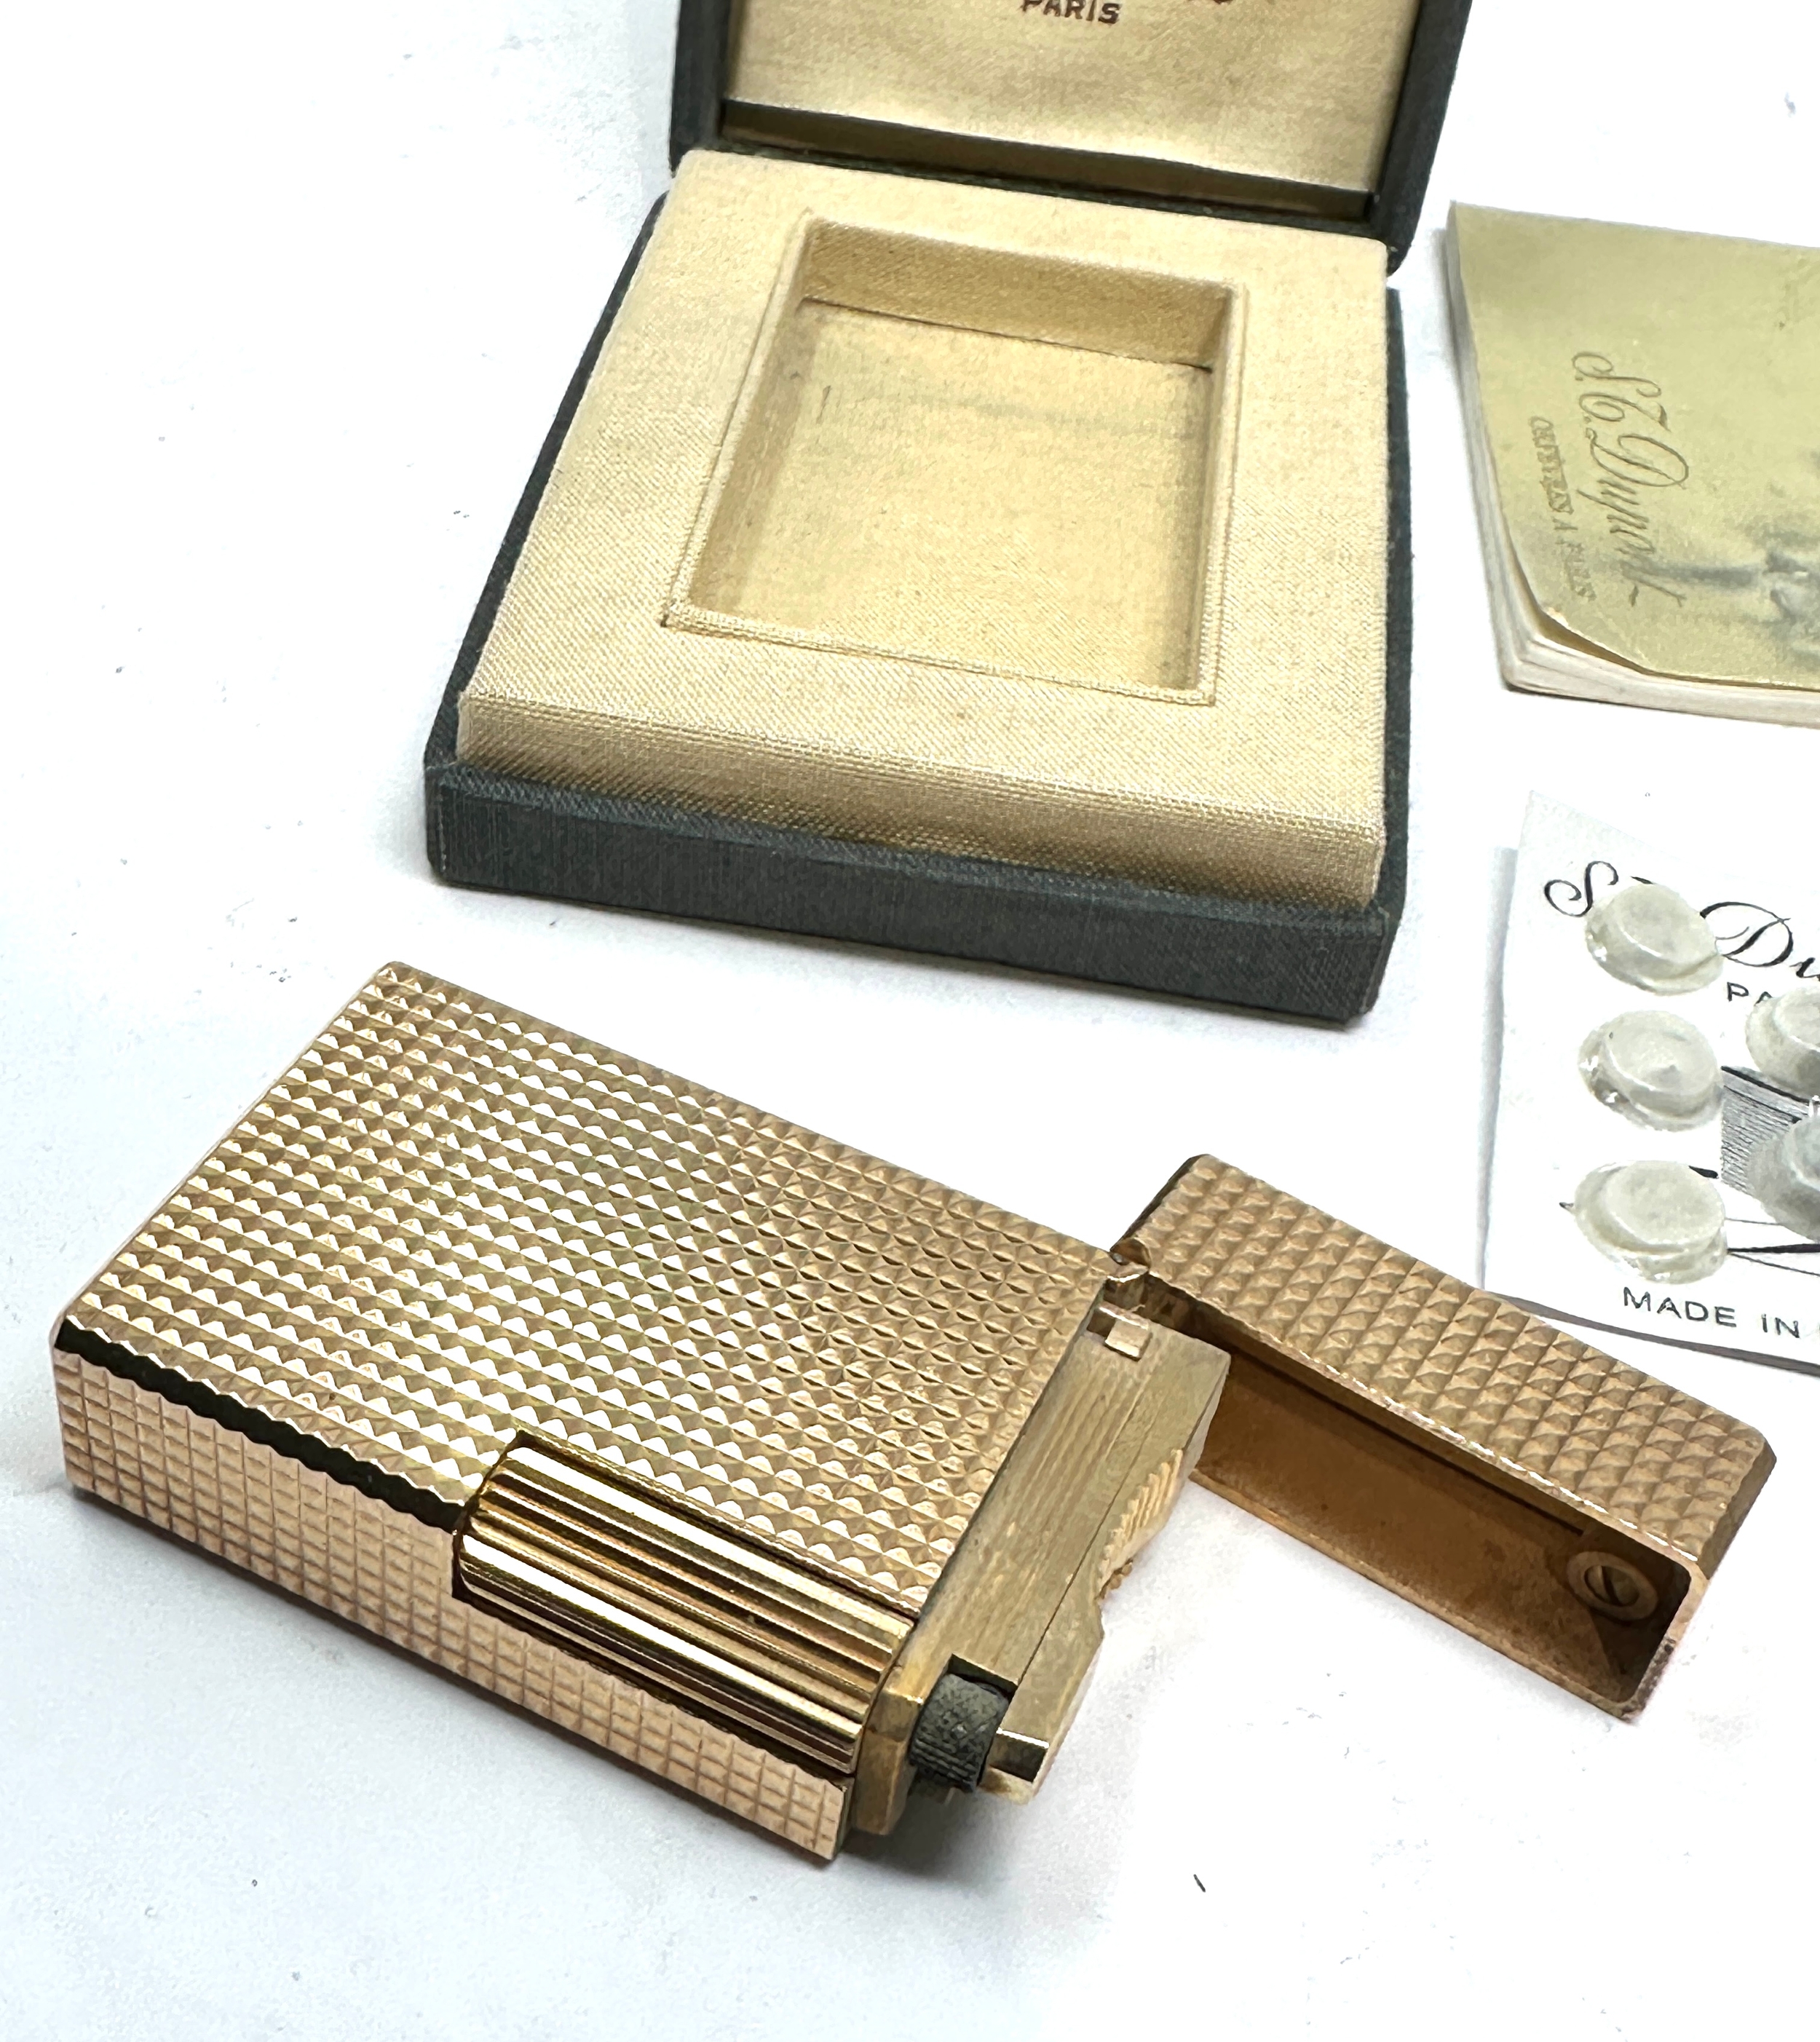 Vintage boxed dupont cigarette lighter - Bild 4 aus 6